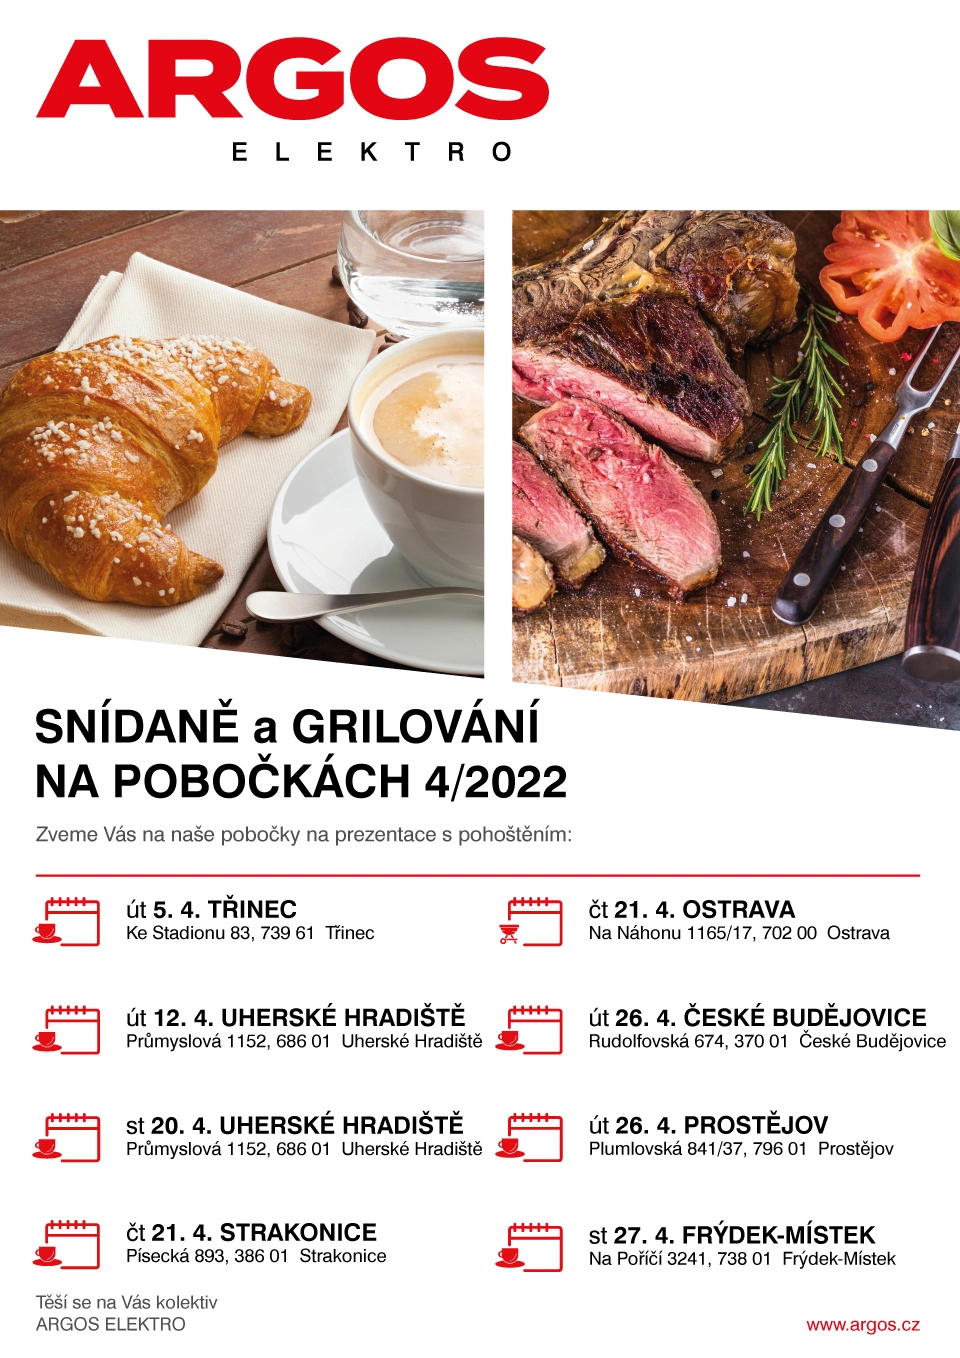 Snídaně a grilování na pobočkách ARGOS 4/2022